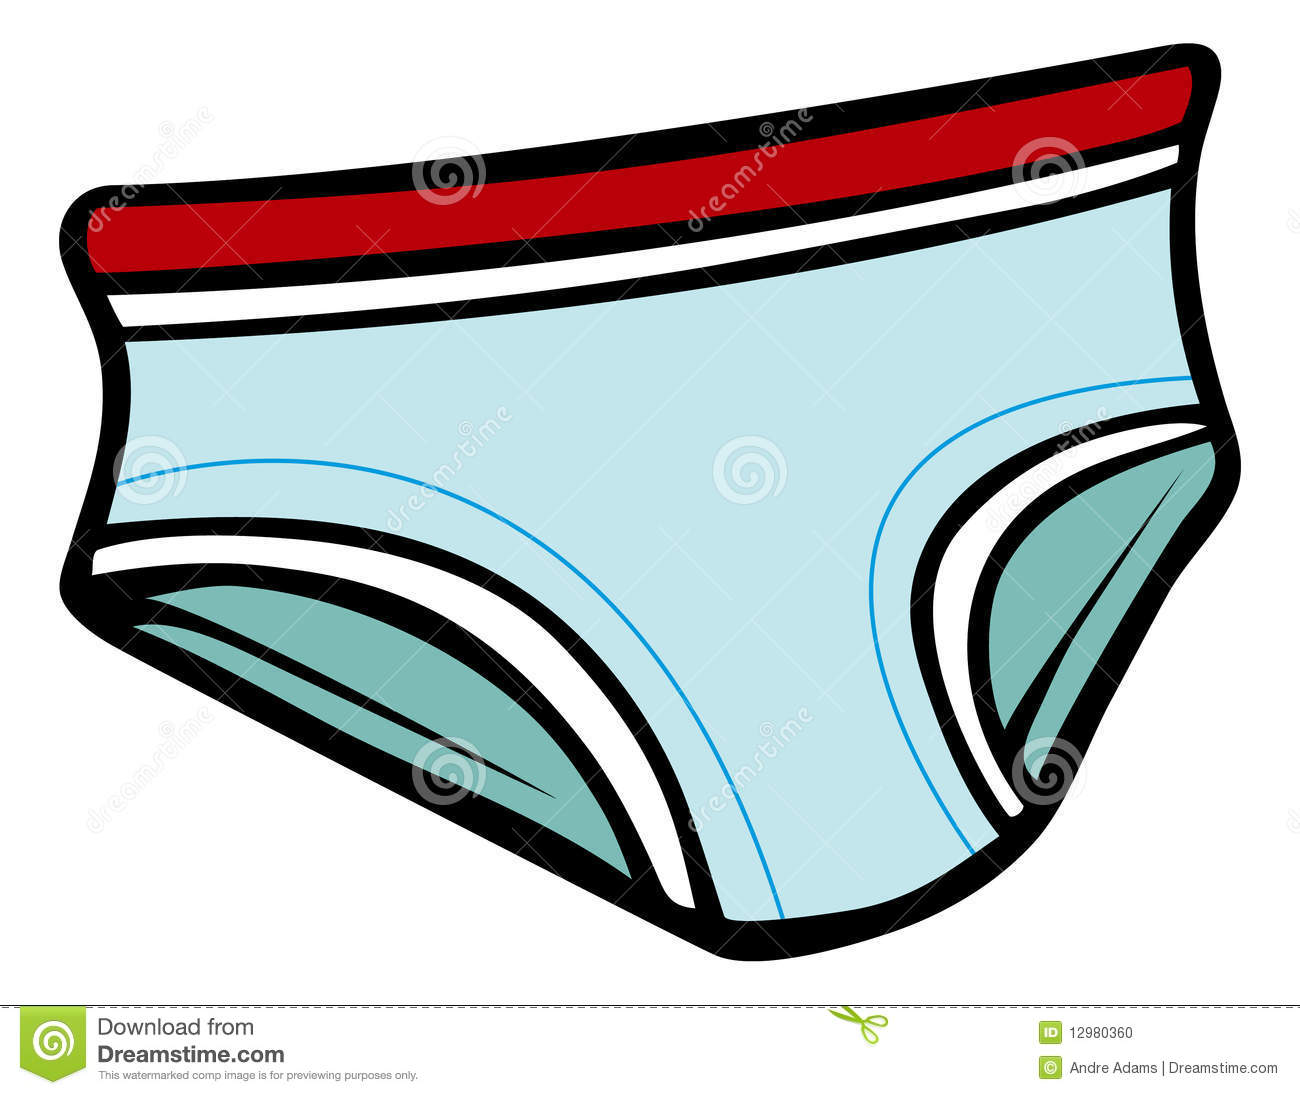 Cartoon Illustration Of Male Underwear